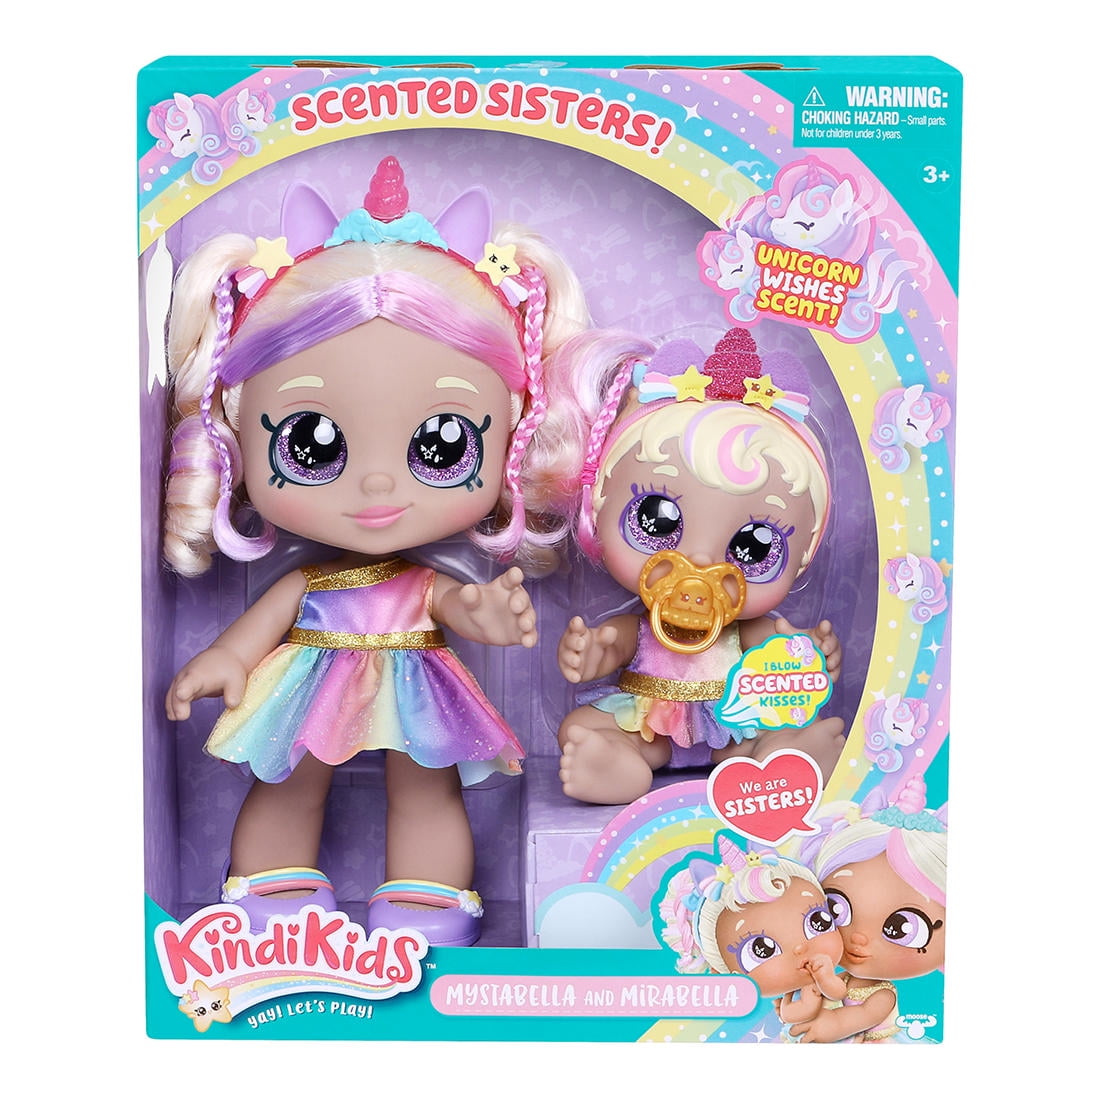 Kindi Kids Mystabella Sisters Doll Set